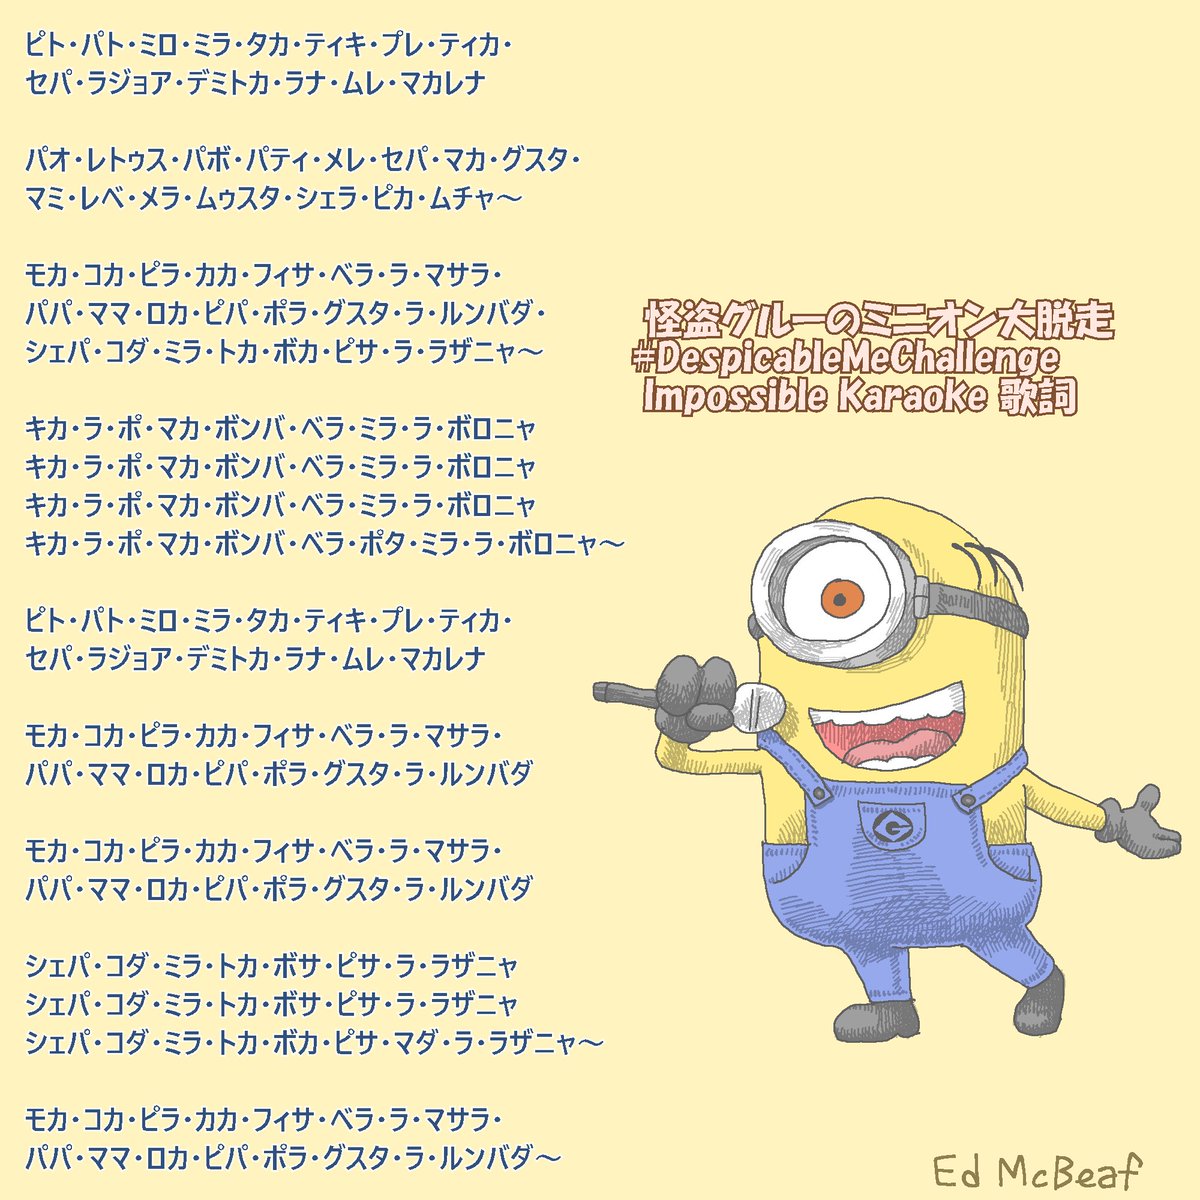 Ed Mcbeaf Na Twitteru 正式な日本語歌詞が公開されたので 表記をそれに合わせた ついでに絵も丁寧に描き直した 公式動画 T Co Vfbqqtbhc0 の歌詞が一部まちがっているので それも修正してあります ミニオンズ Minions ミニオン大脱走 怪盗グルー